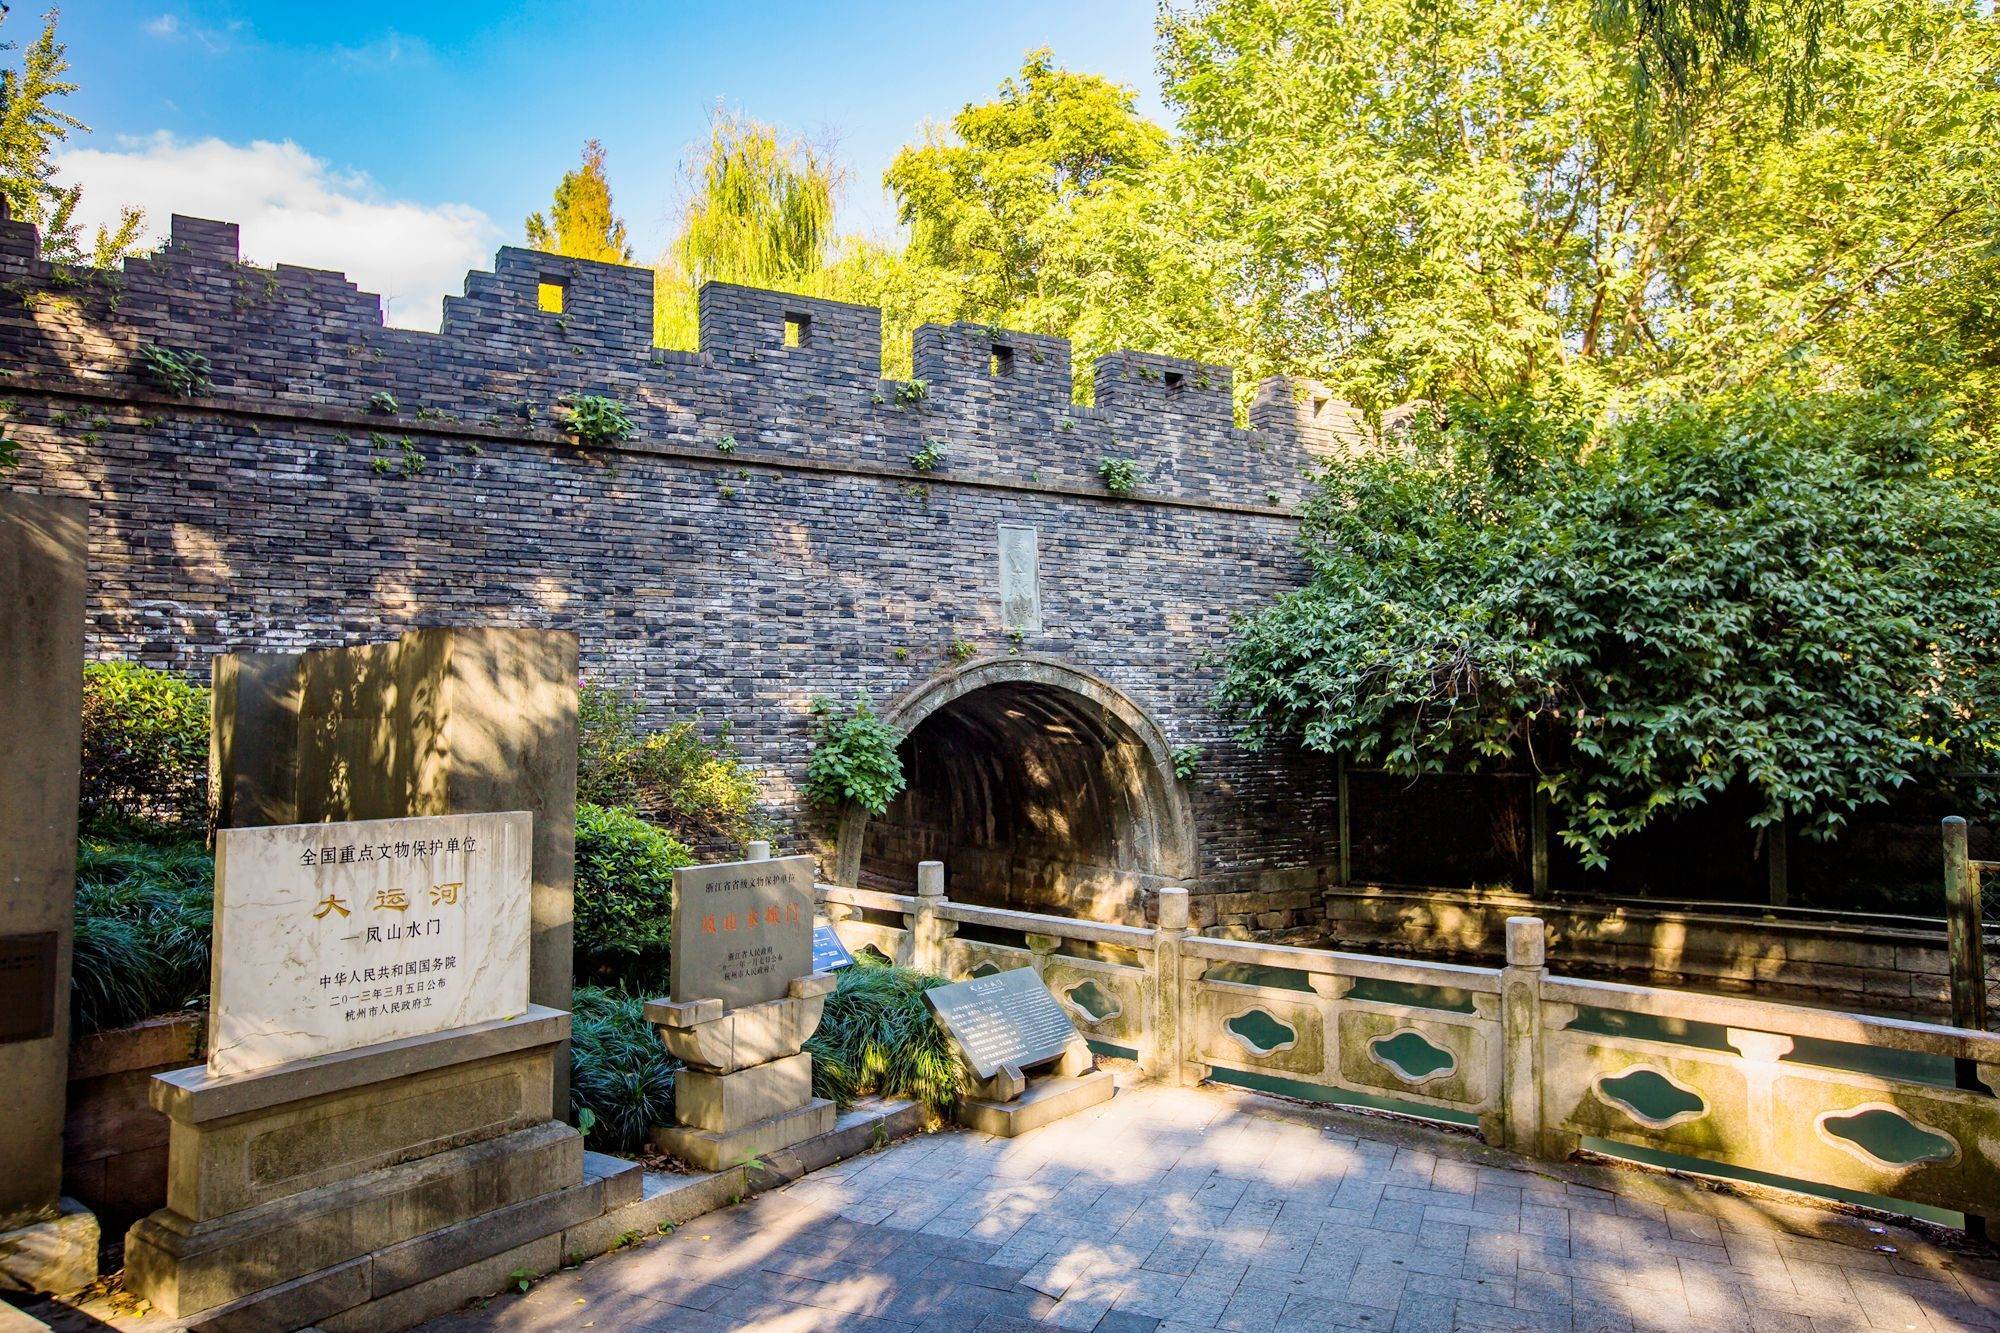 杭州凤山水城门遗址,距今已有650年的历史,是探古寻幽的好去处